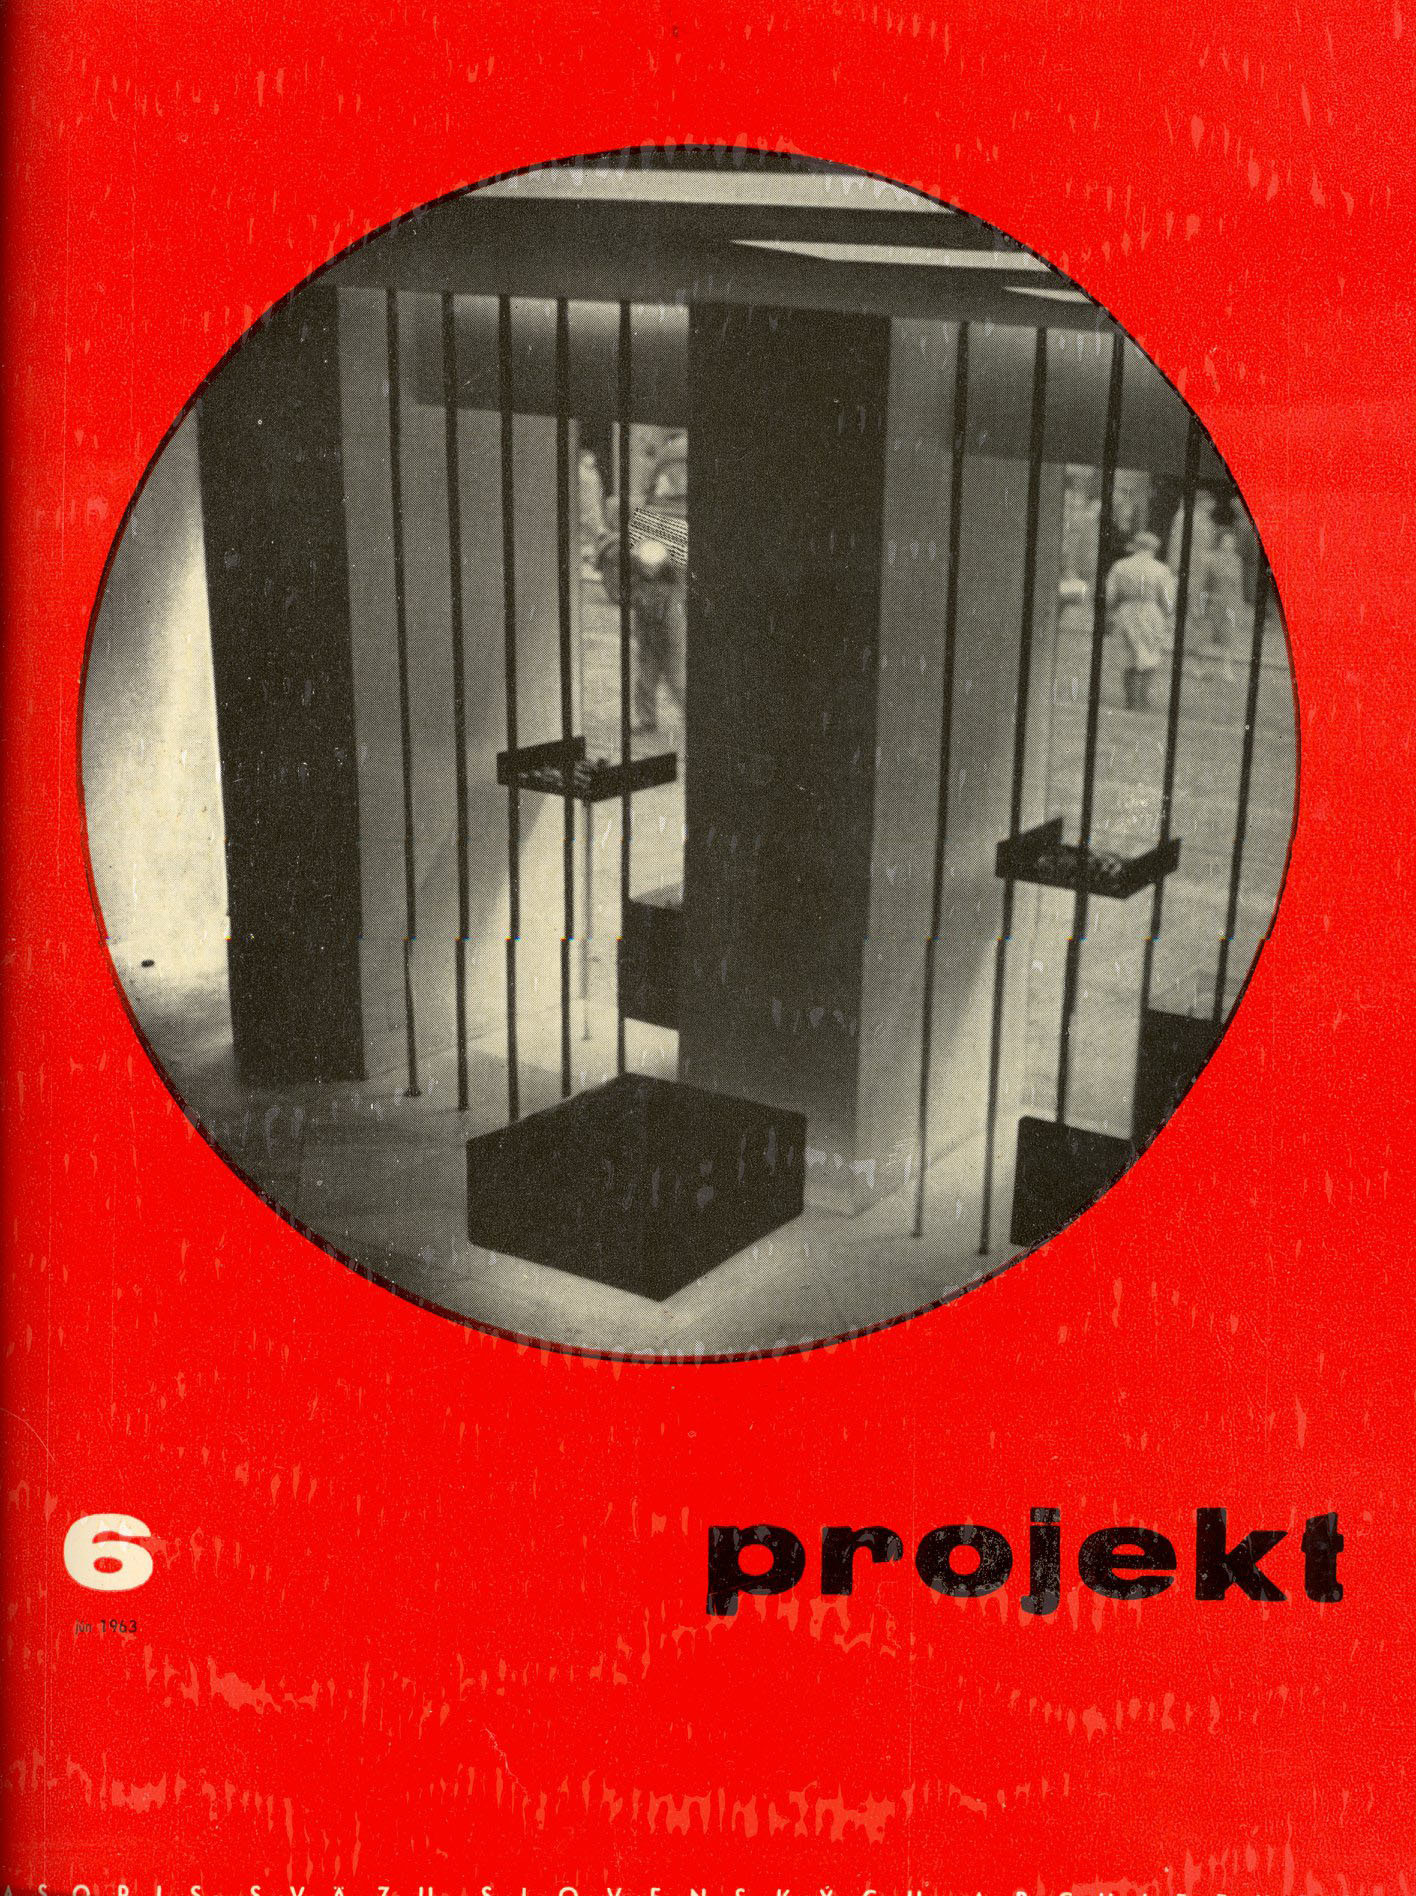 Obálky časopisu Projekt v koncepcii Ivana Matušíka a Stanislava Talaša